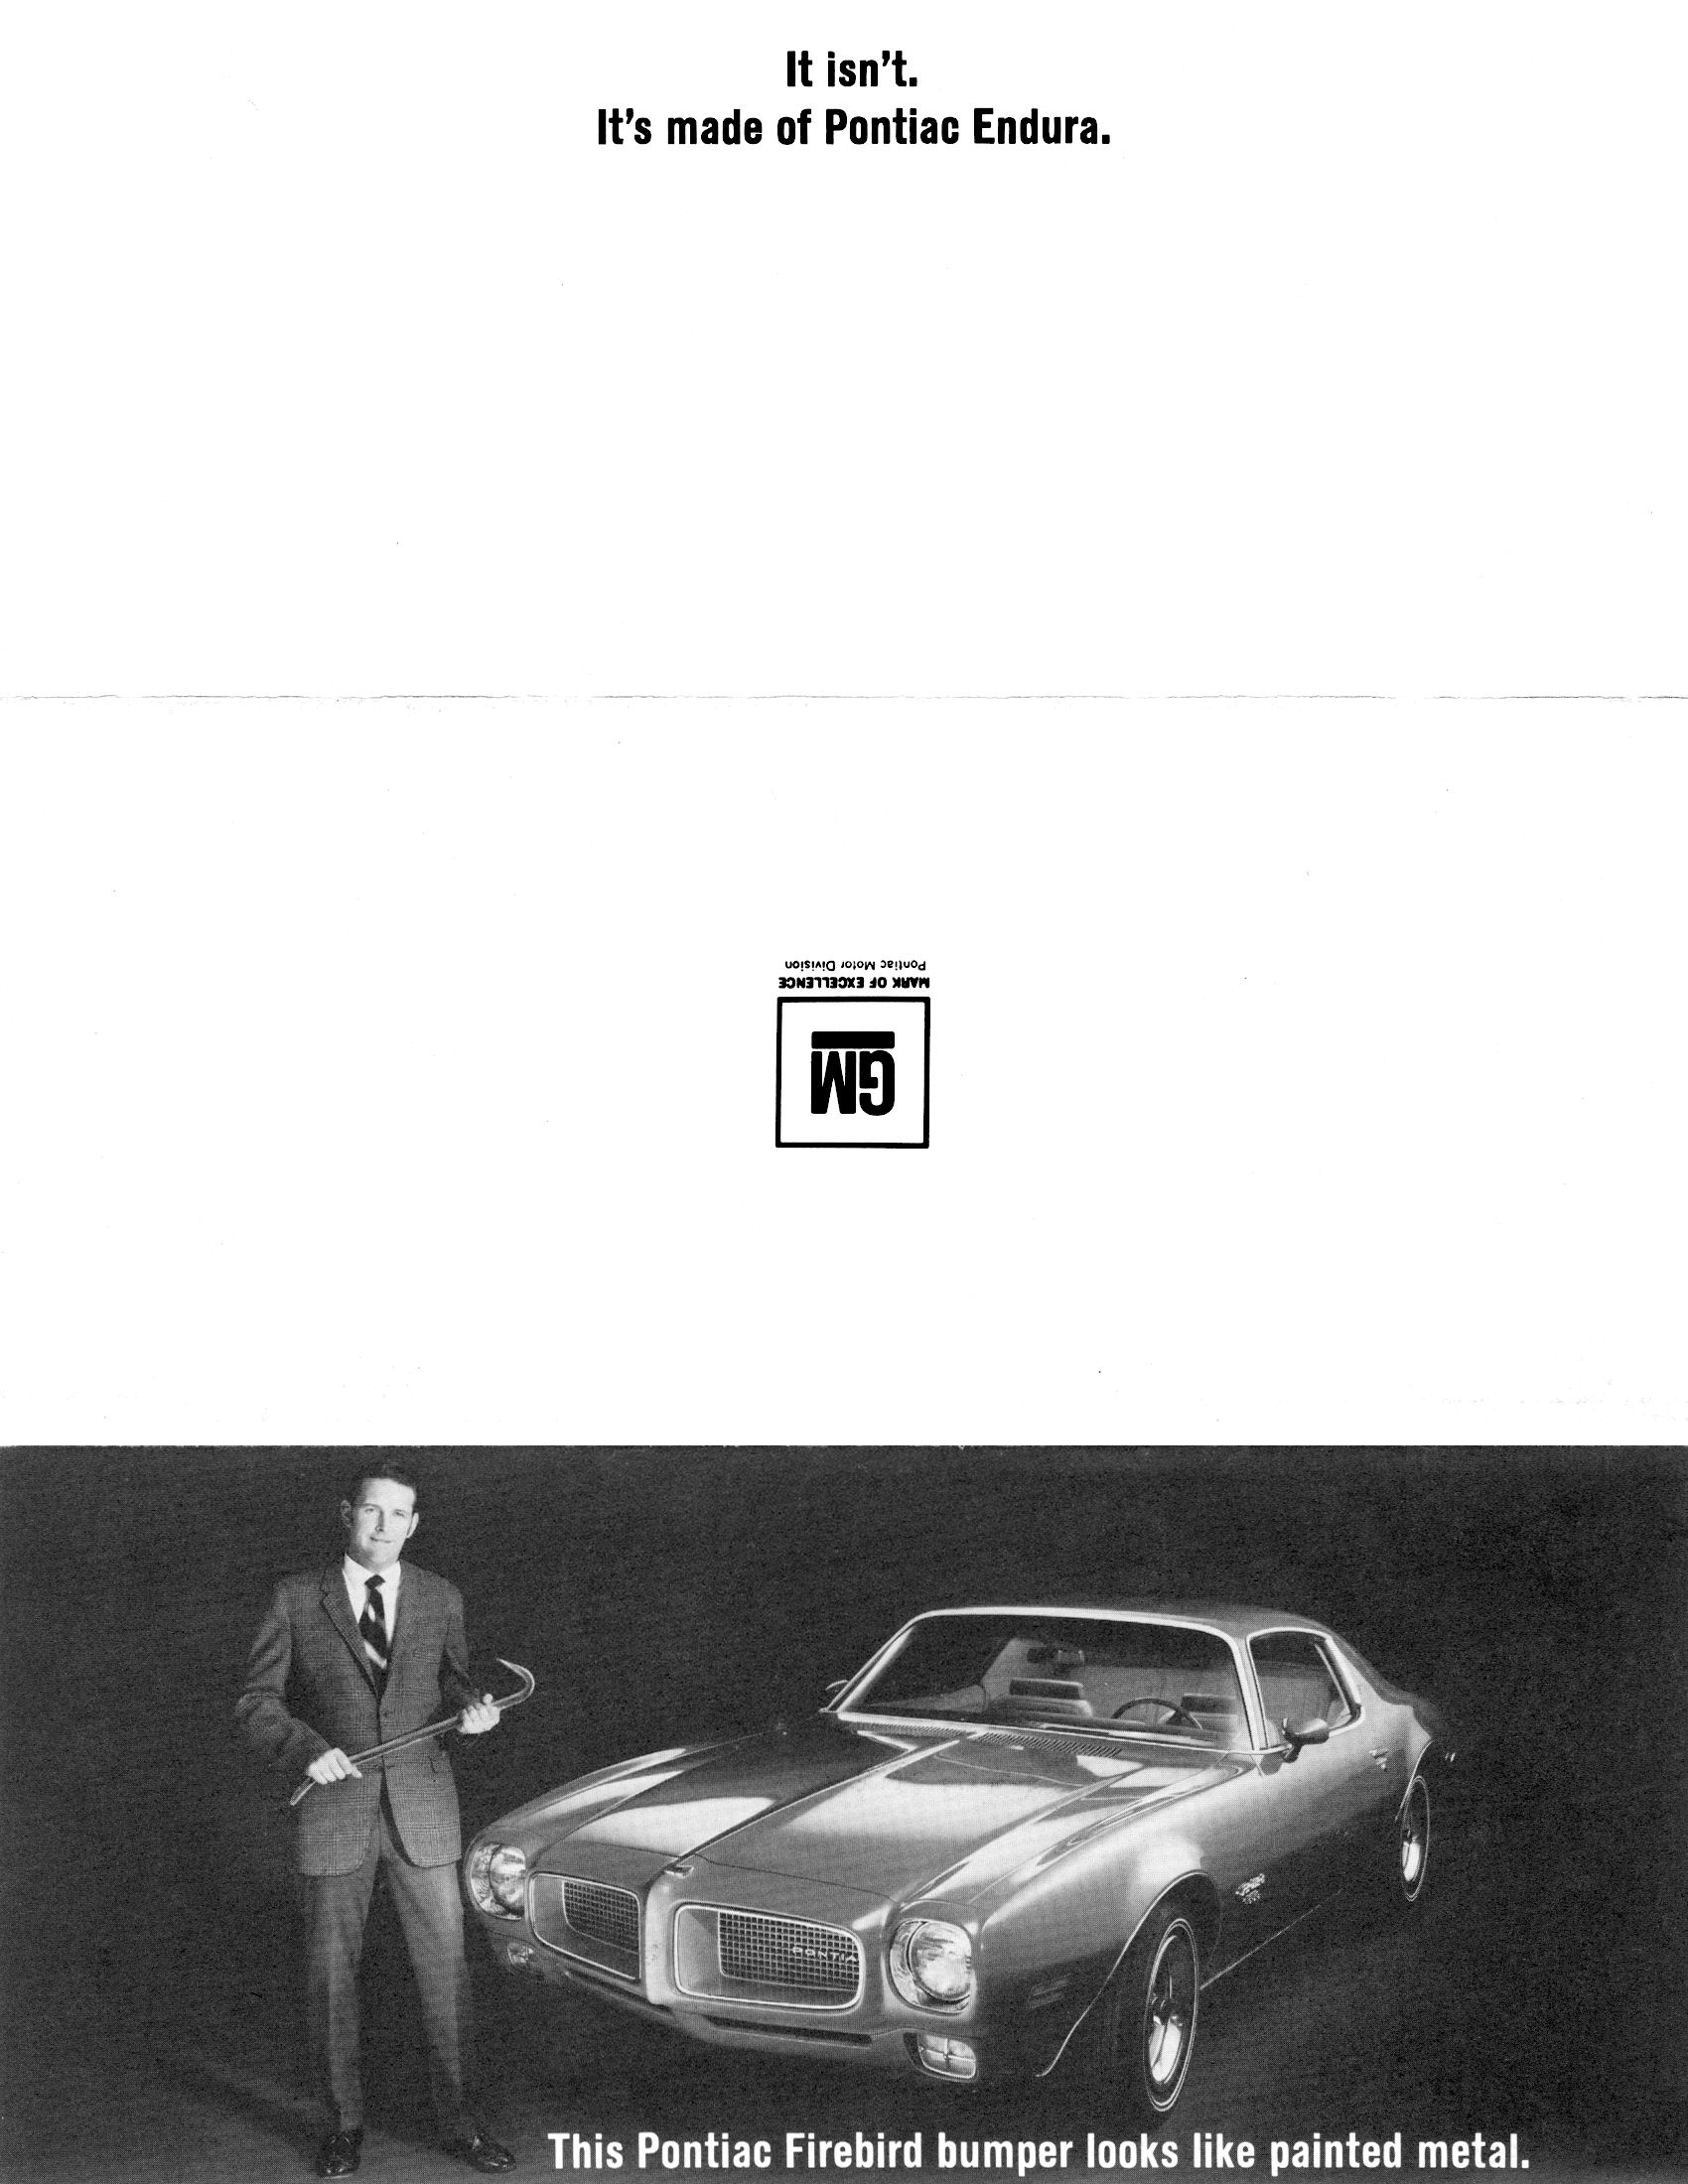 1970_Pontiac_Firebird__Endura_Bumper_Folder-01